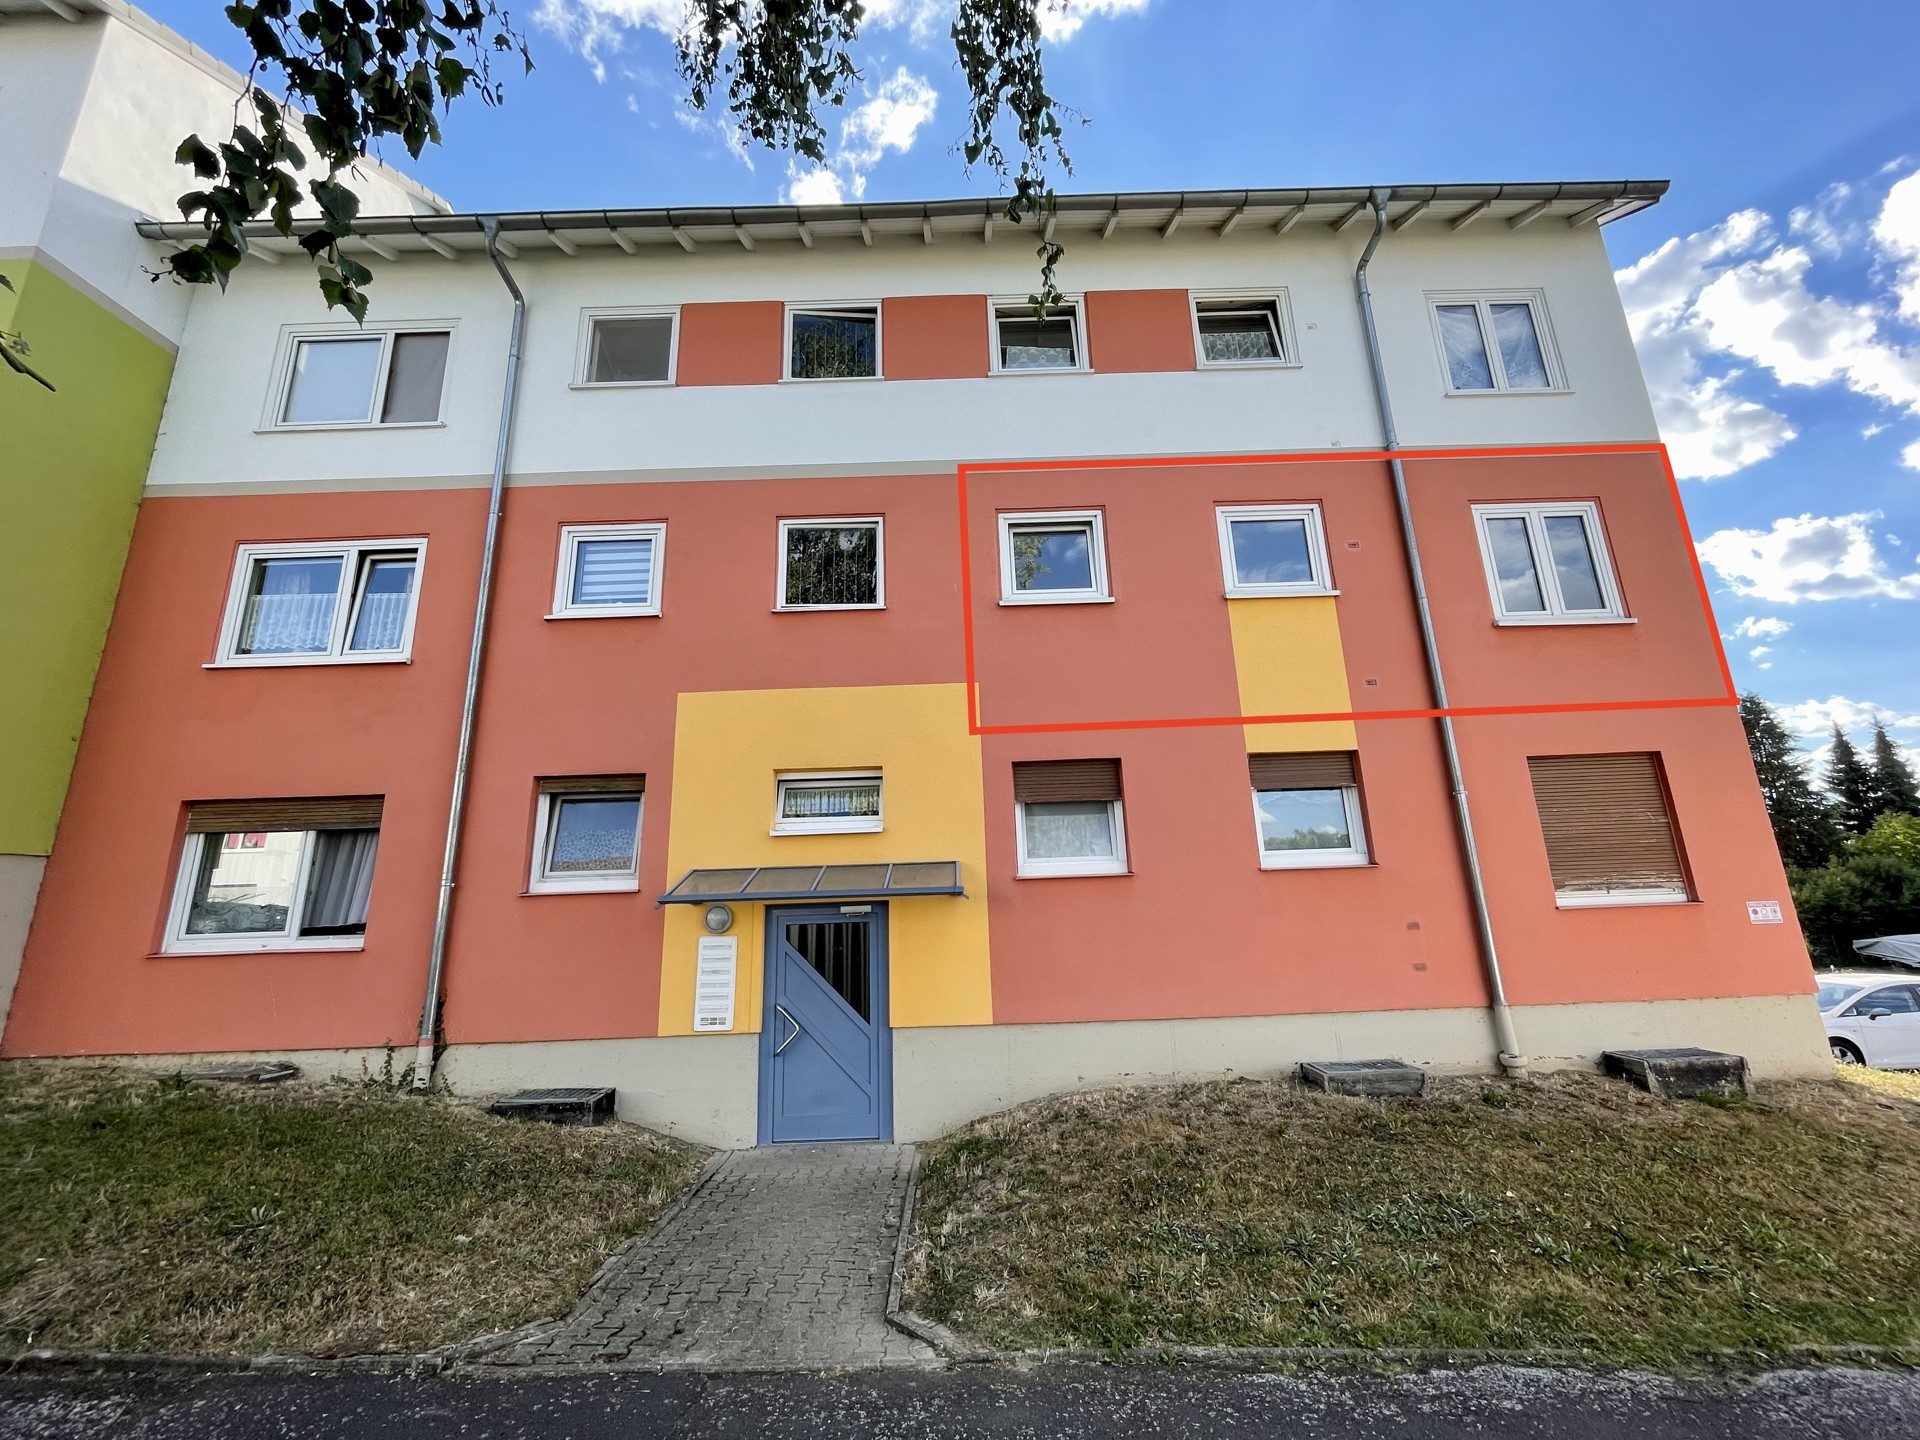 Immobilienangebot - Homberg (Efze) - Alle - Helle 3-ZKB Wohnung mit Balkon in Homberg zu vermieten!